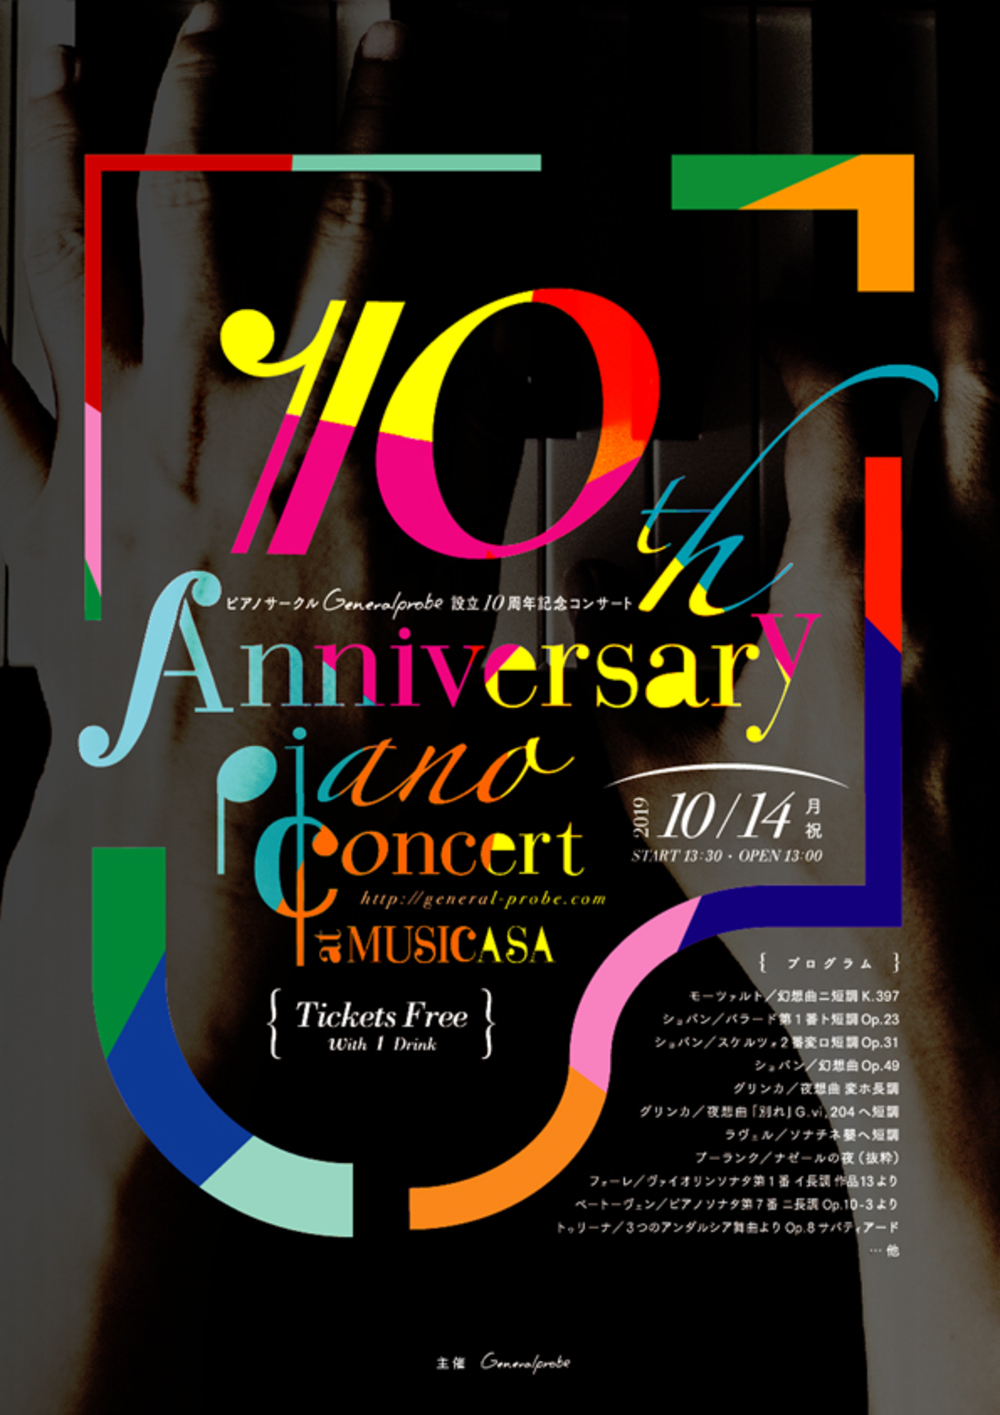 ピアノサークル Generalprobe 設立10周年記念コンサート